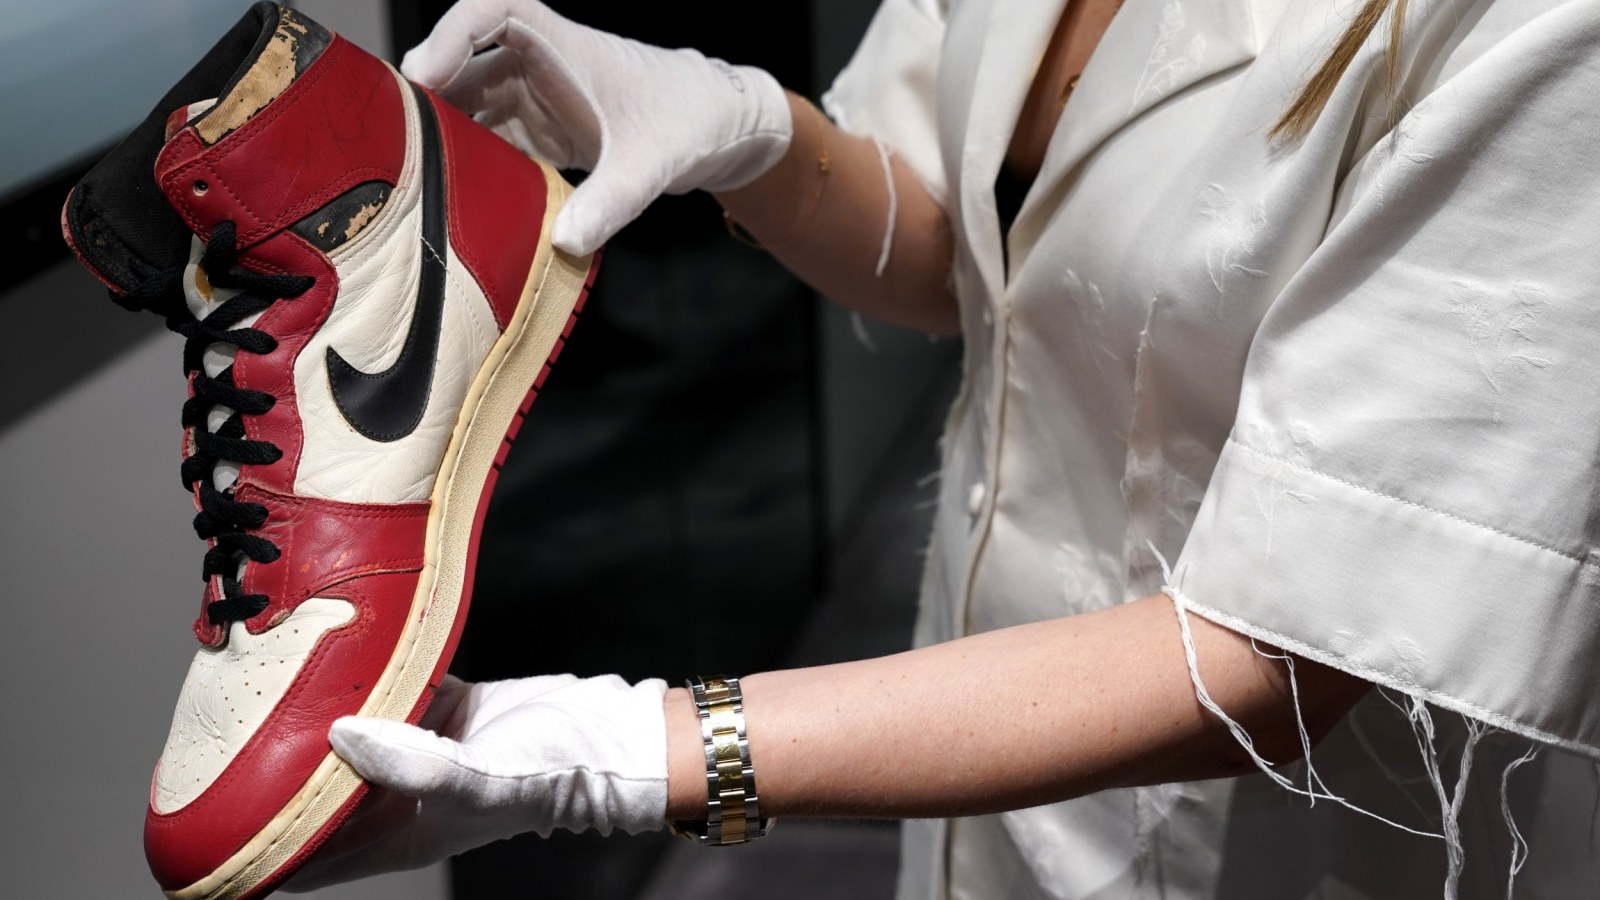 Top 10 Air Jordan Sneakers Of All Time: 2023 Edition